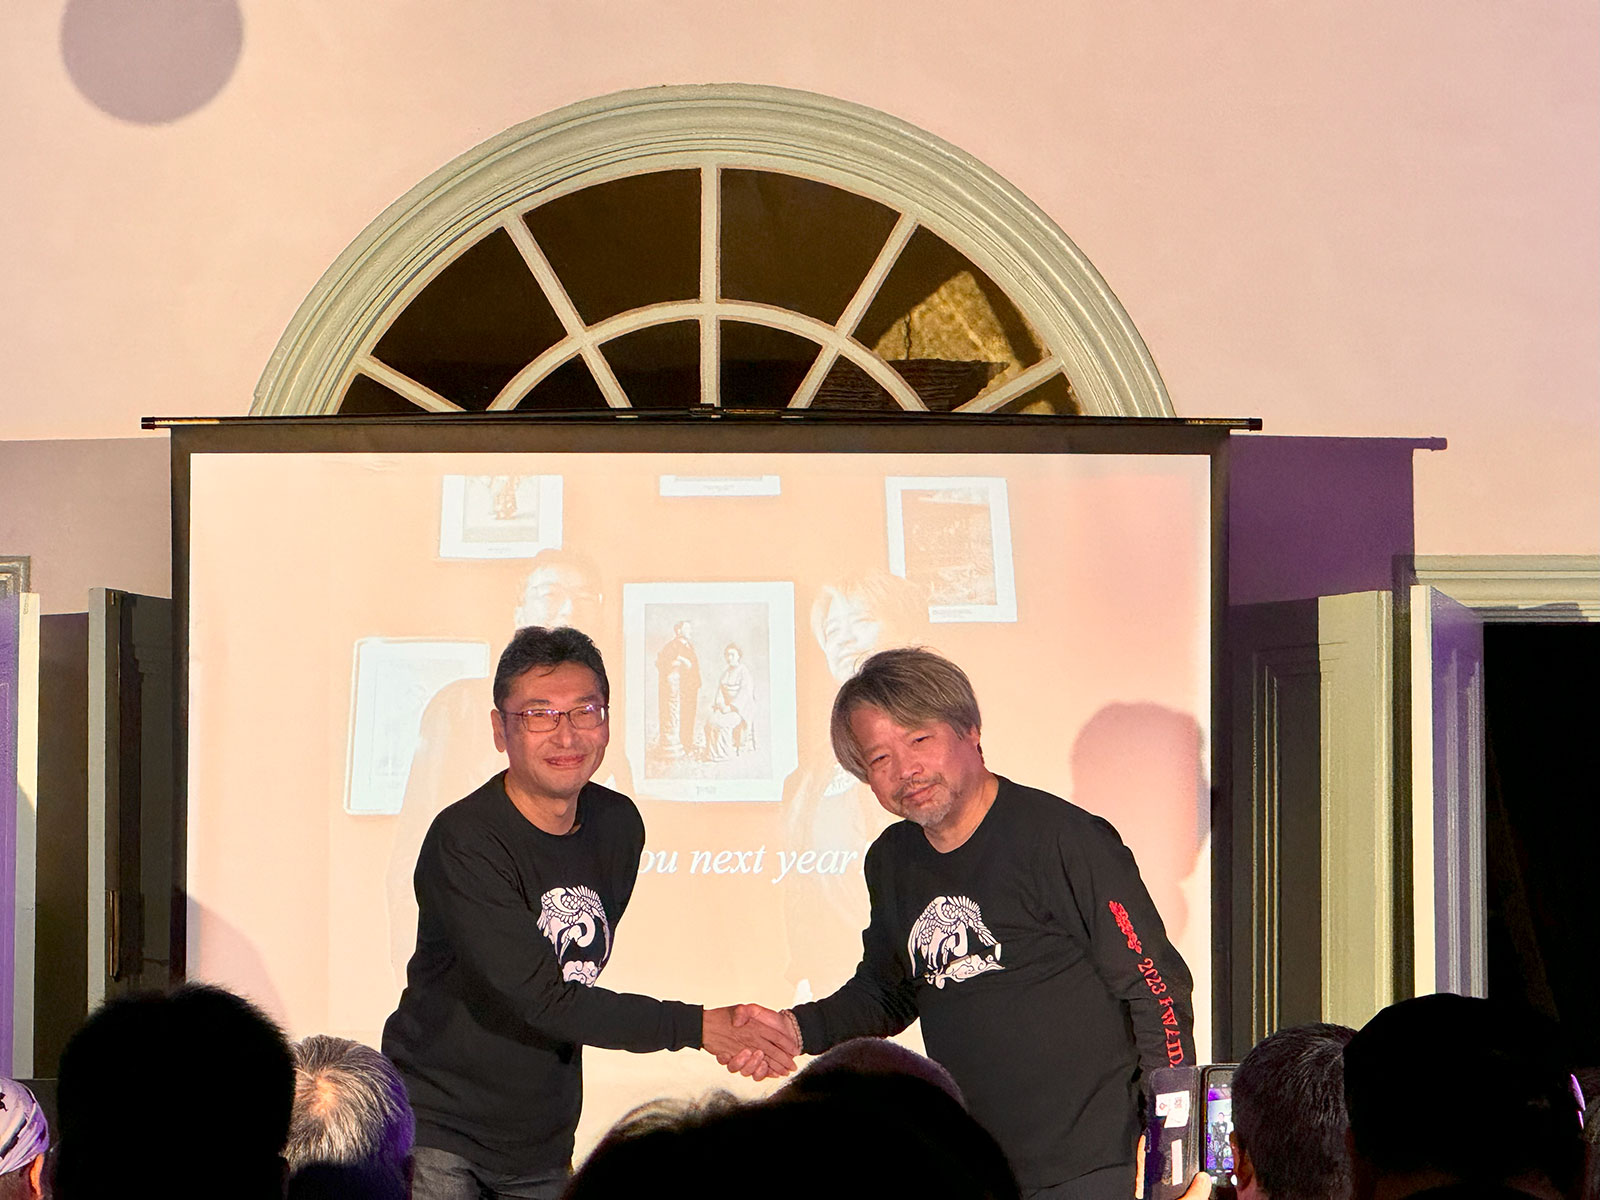 イベント最後に催されたフォトセッションにて。左が小泉凡氏、右が木原浩勝氏。